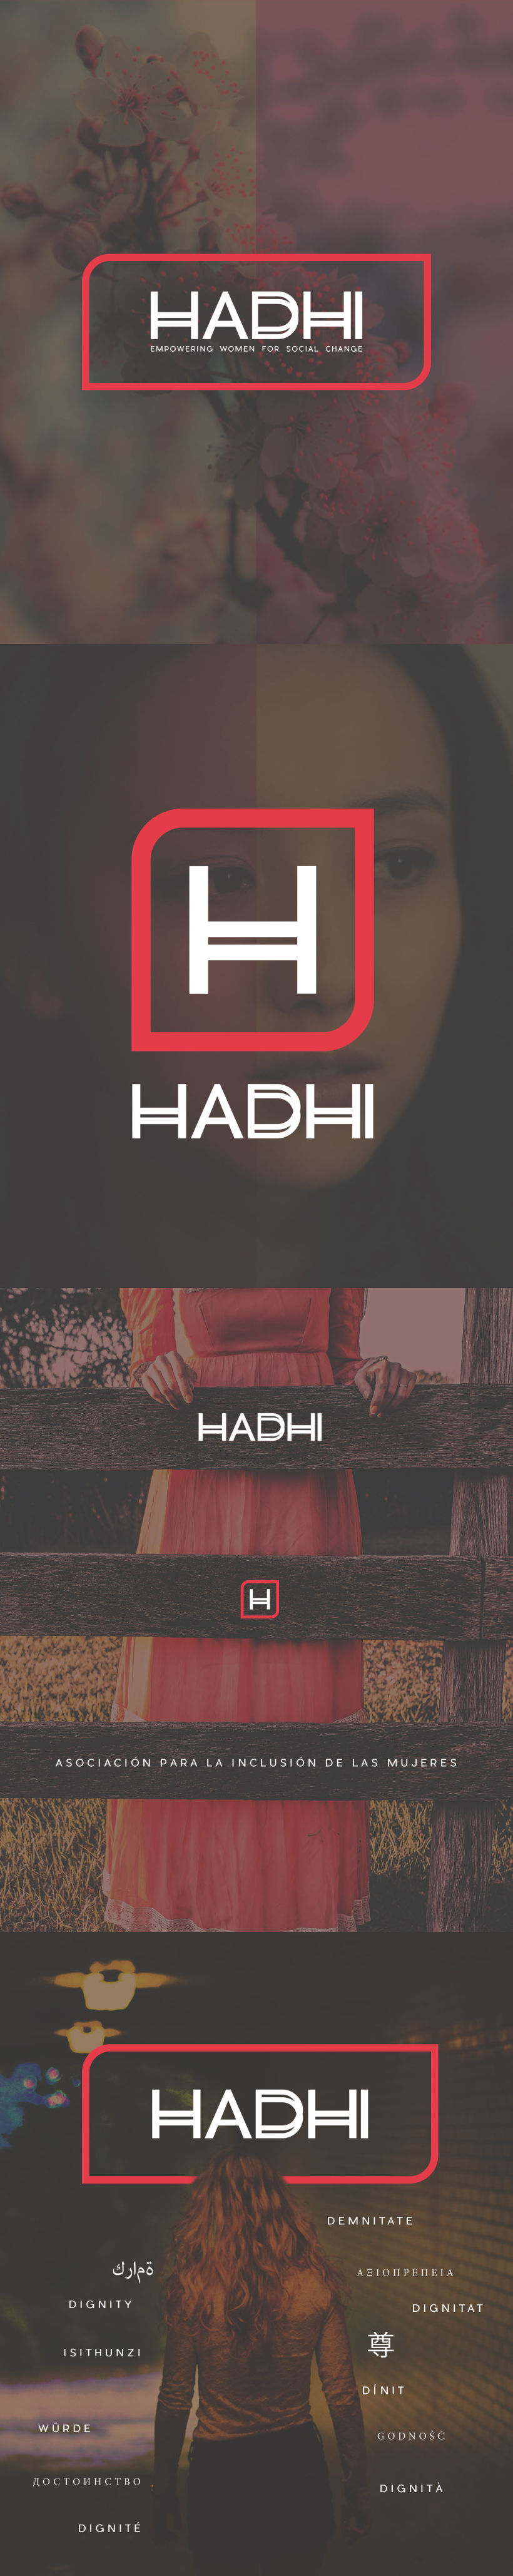 HADHI -1